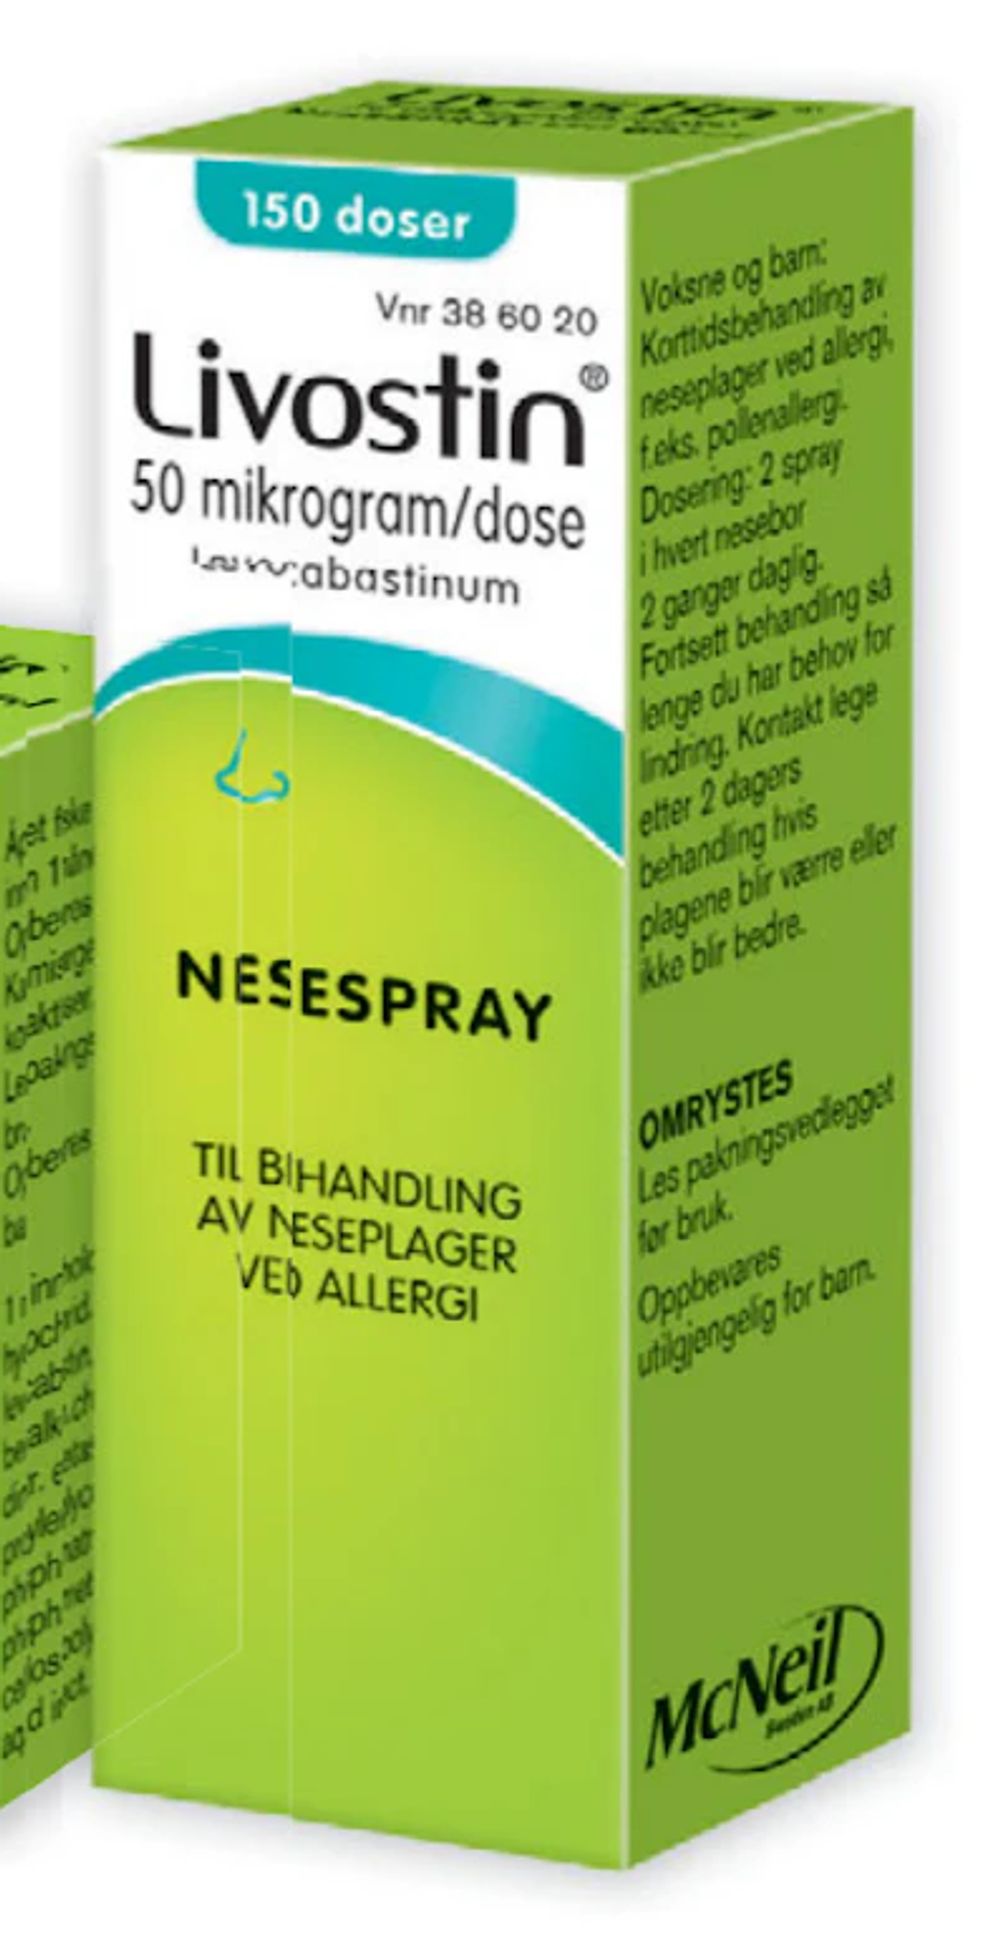 Tilbud på Livostin nesespray 0,5 mg/dose fra Vitusapotek til 229,90 kr